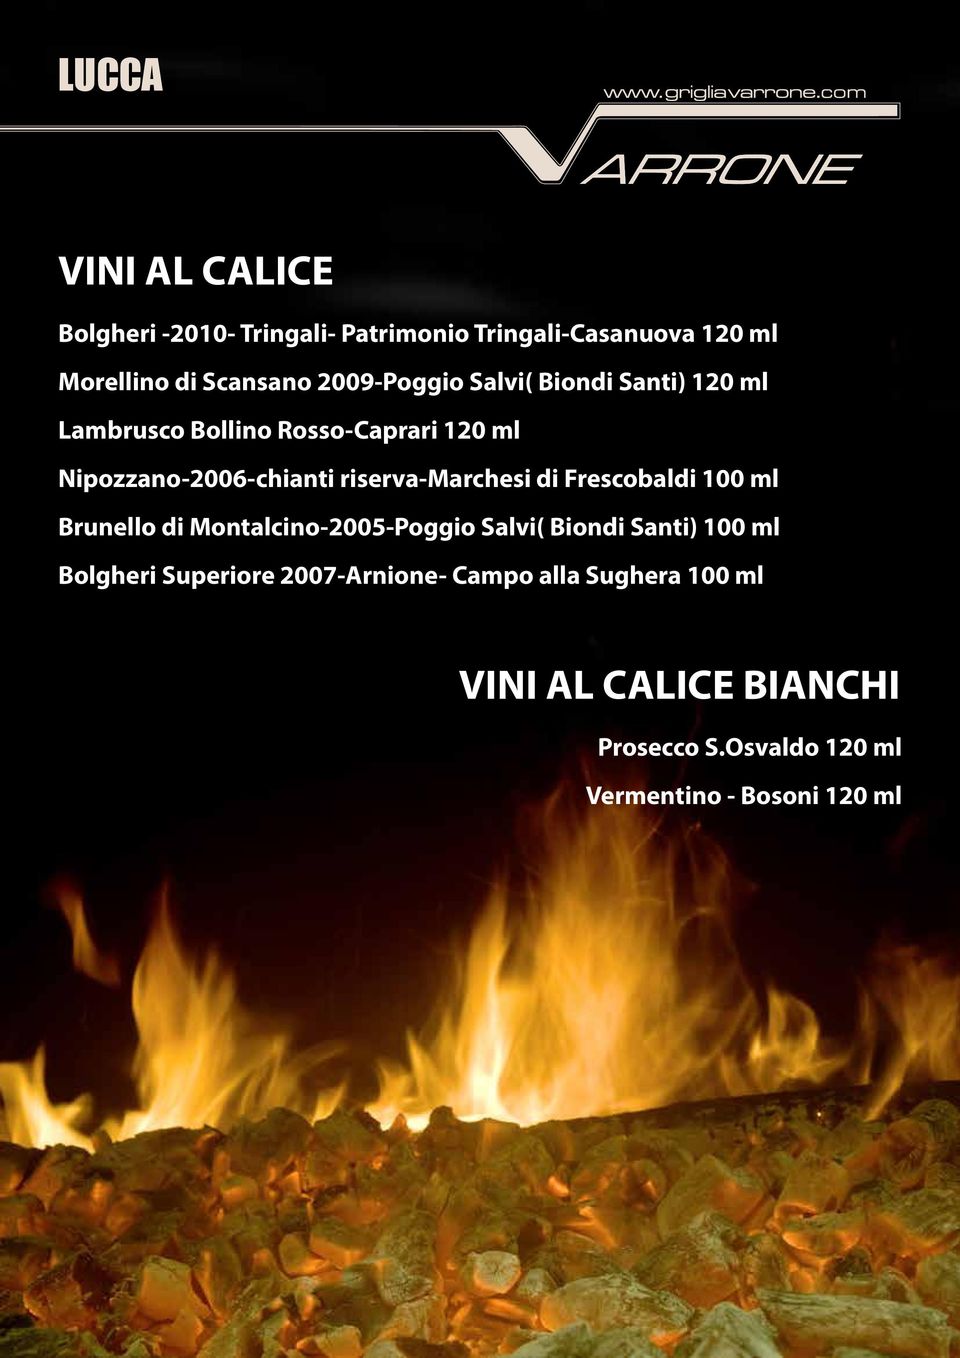 riserva-marchesi di Frescobaldi 100 ml Brunello di Montalcino-2005-Poggio Salvi( Biondi Santi) 100 ml